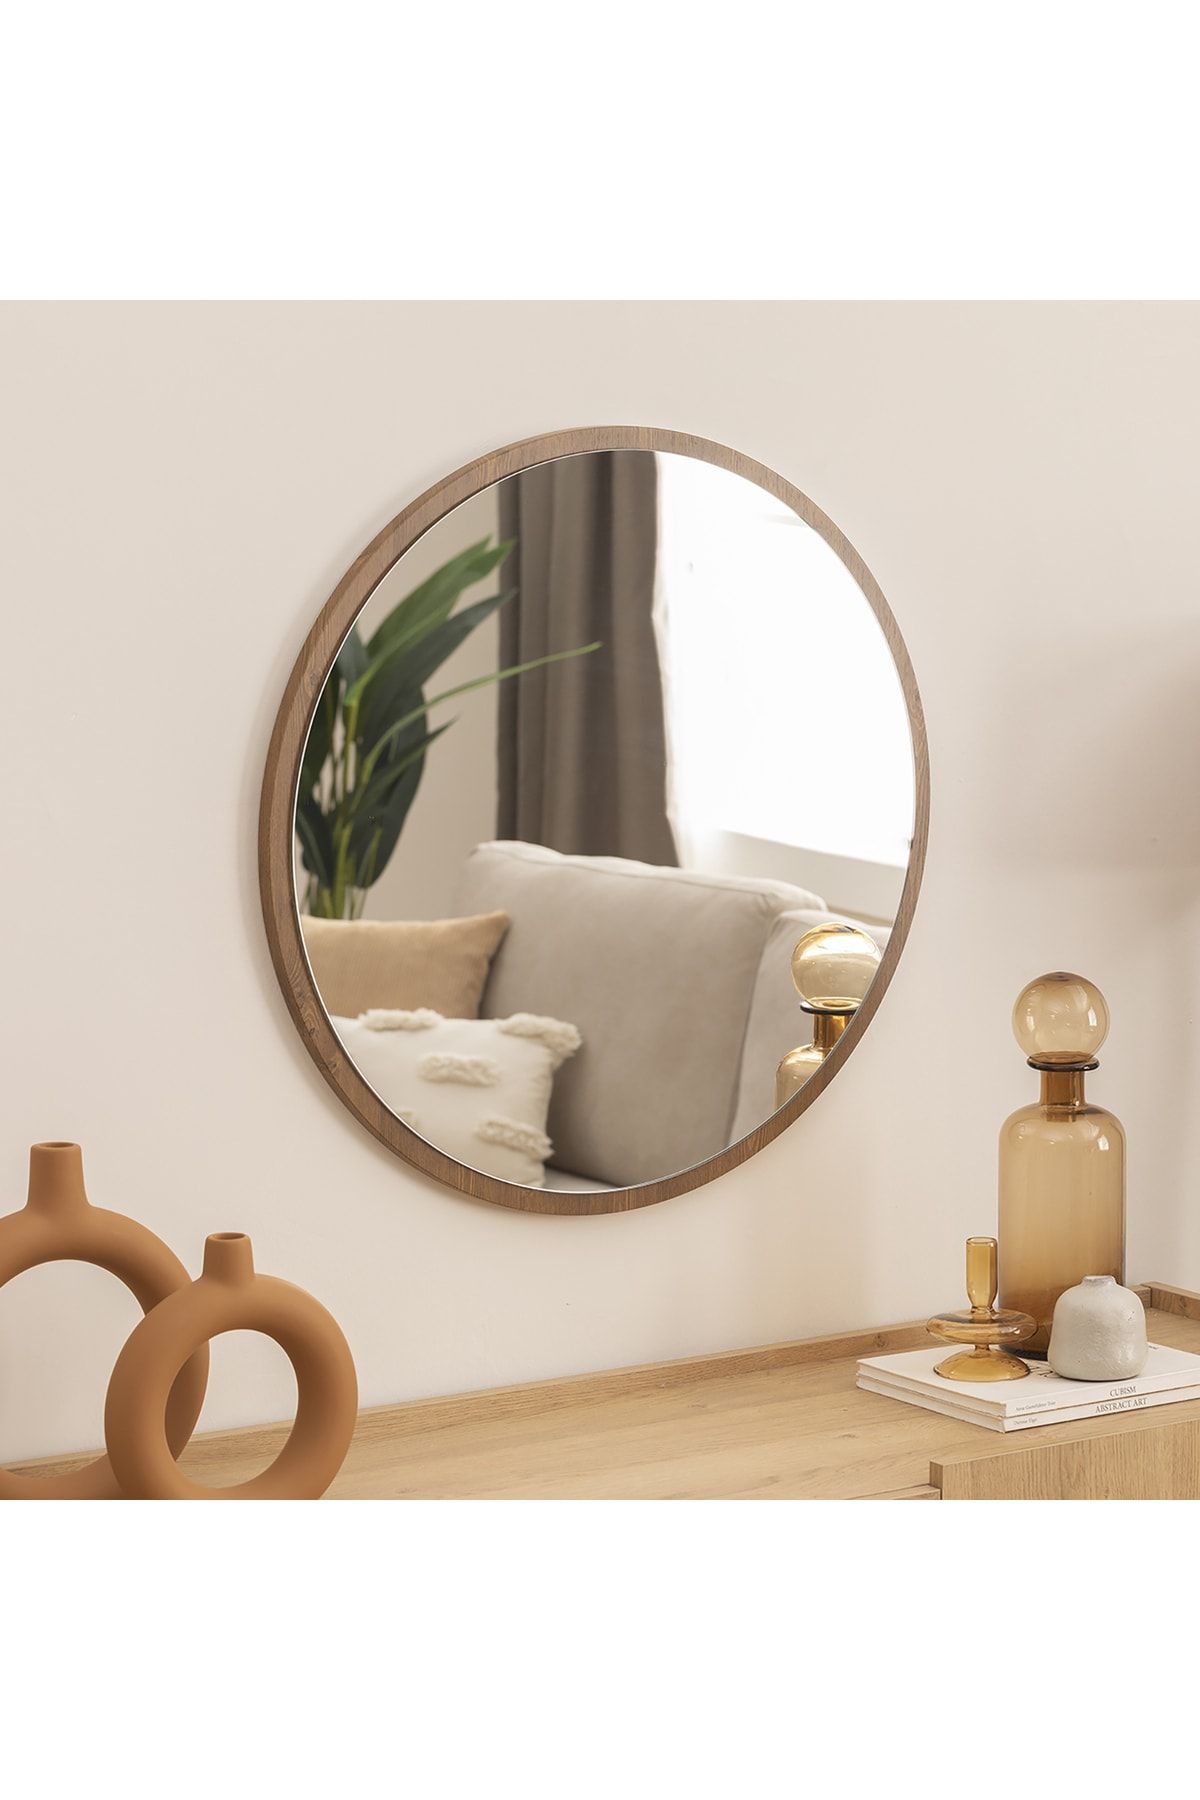 DFN WOOD Kahverengi Mdf Yuvarlak Duvar Salon Banyo Aynası 100 Cm